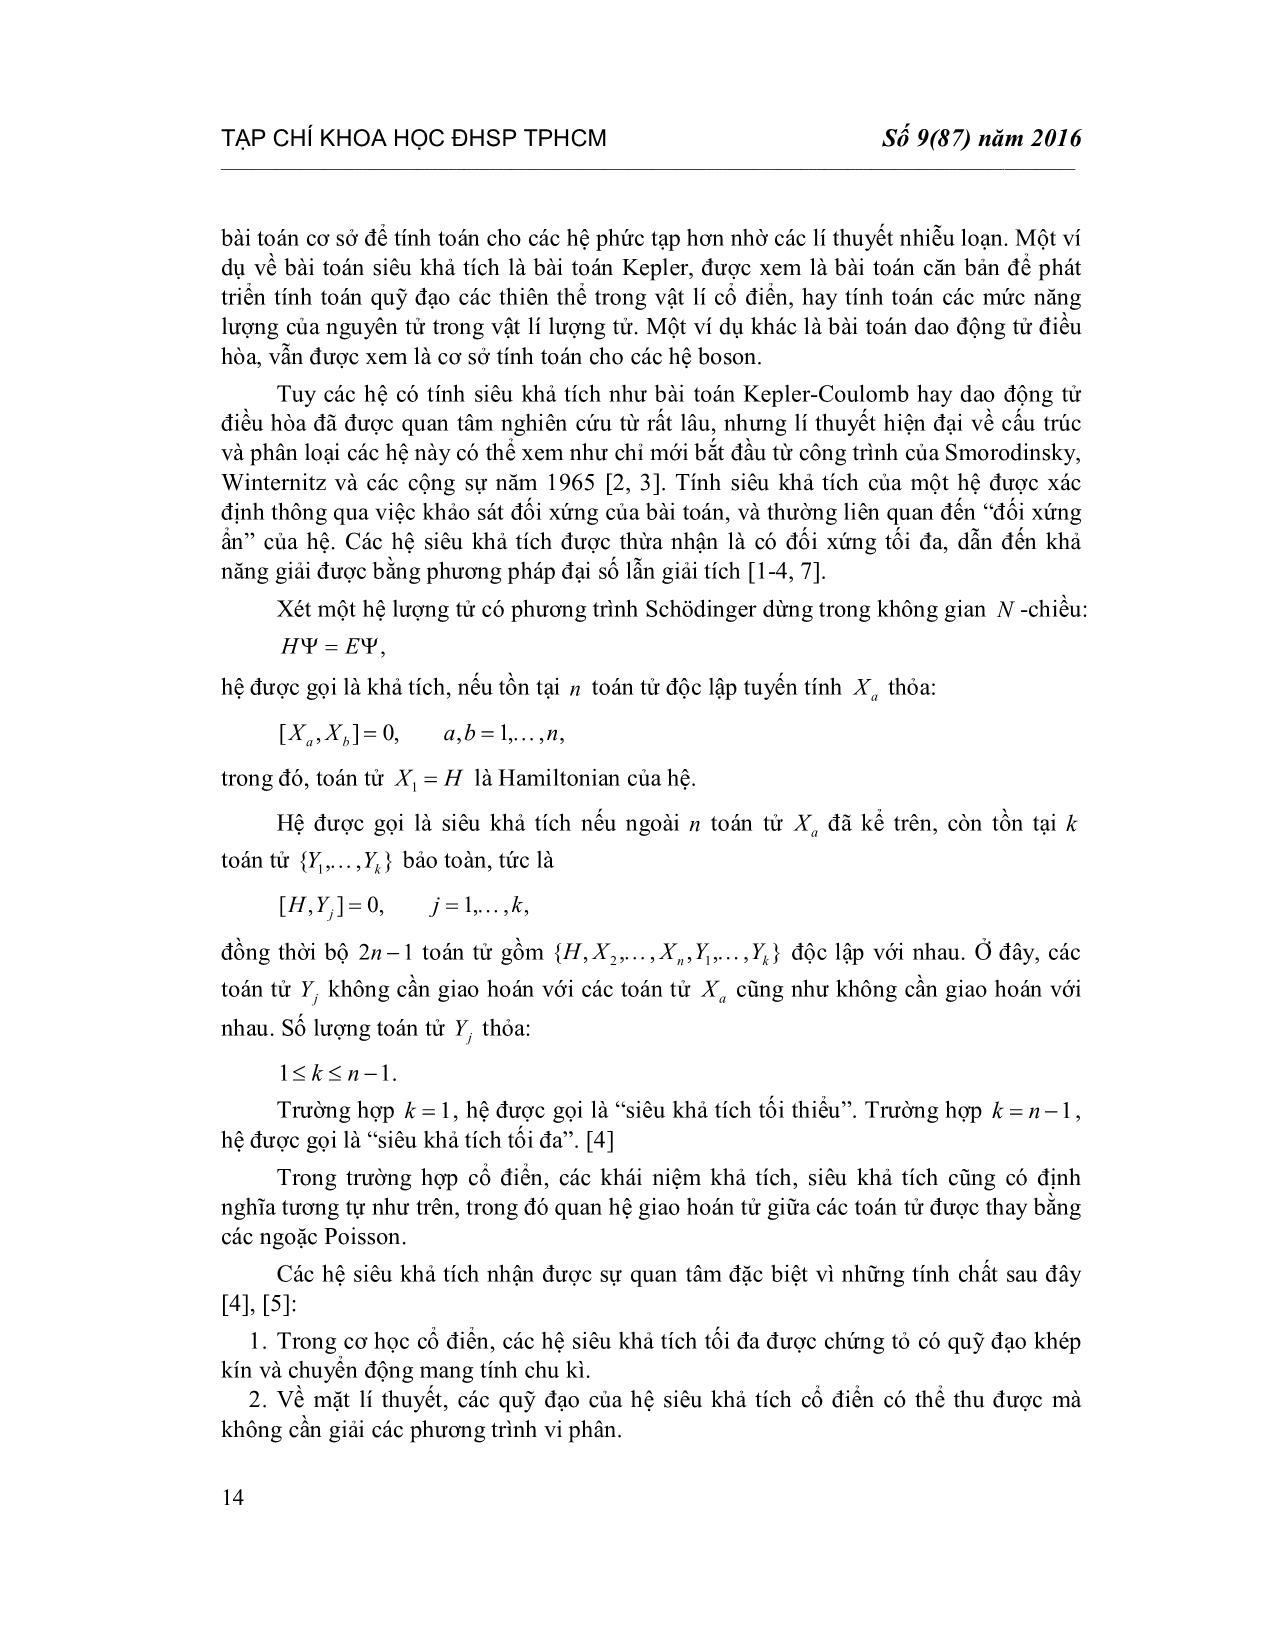 Tính siêu khả tích của bài toán Micz-Kepler chín chiều trang 2